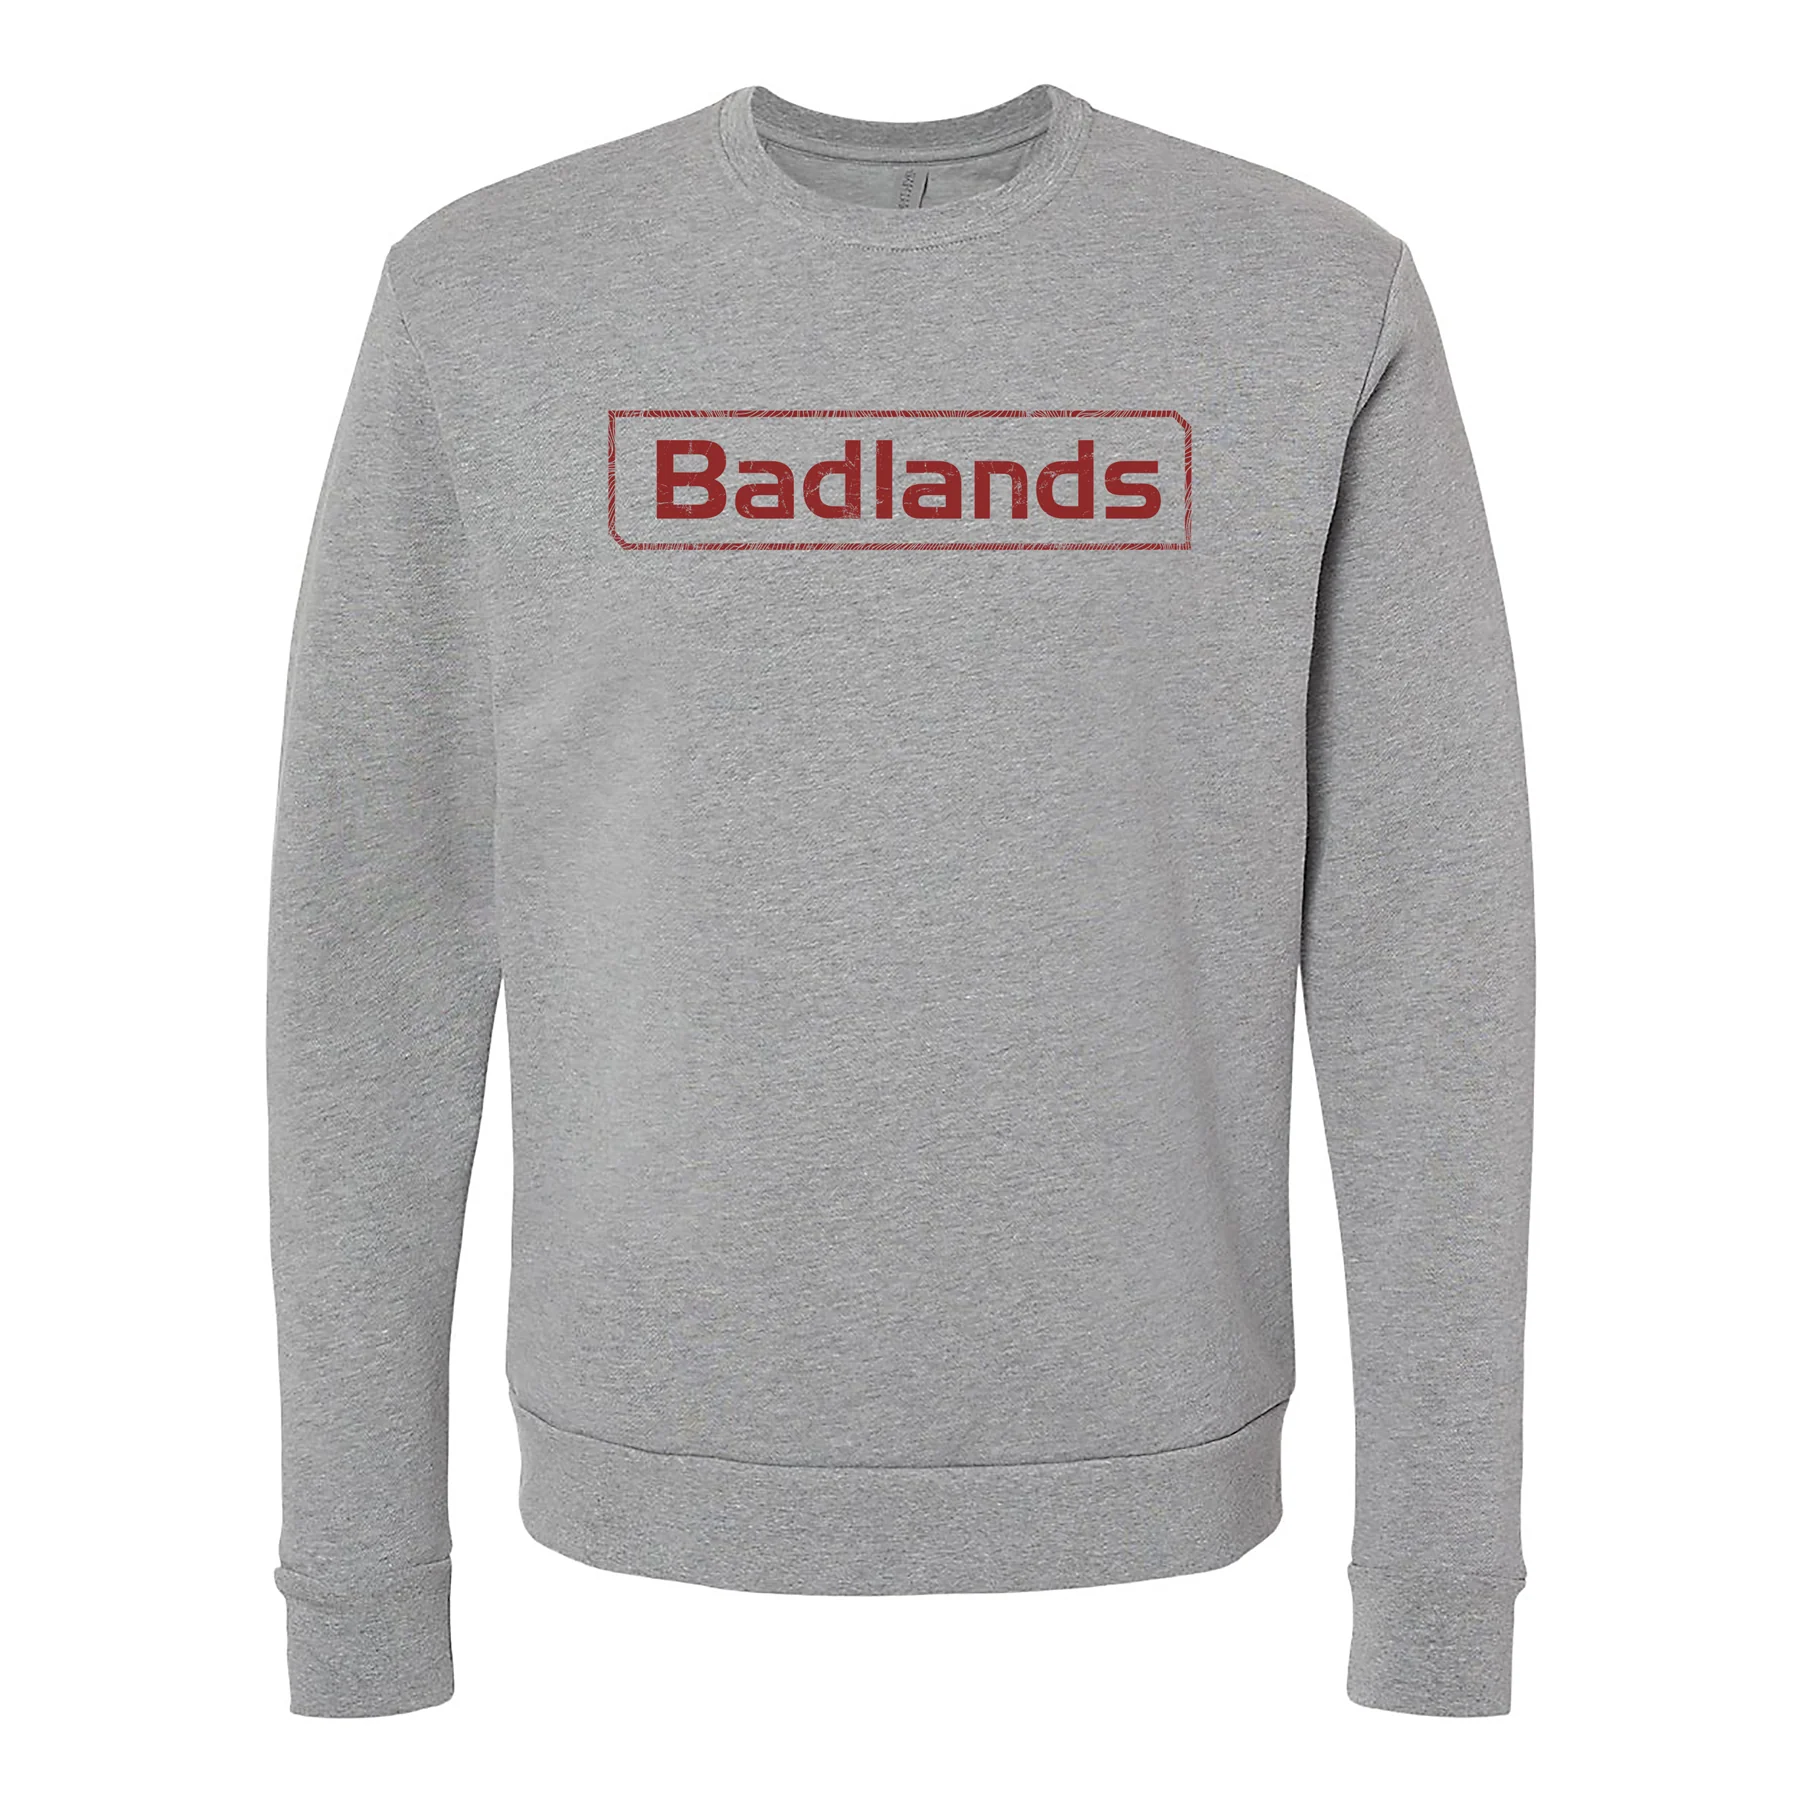 Badlands Crewneck Sweatshirt